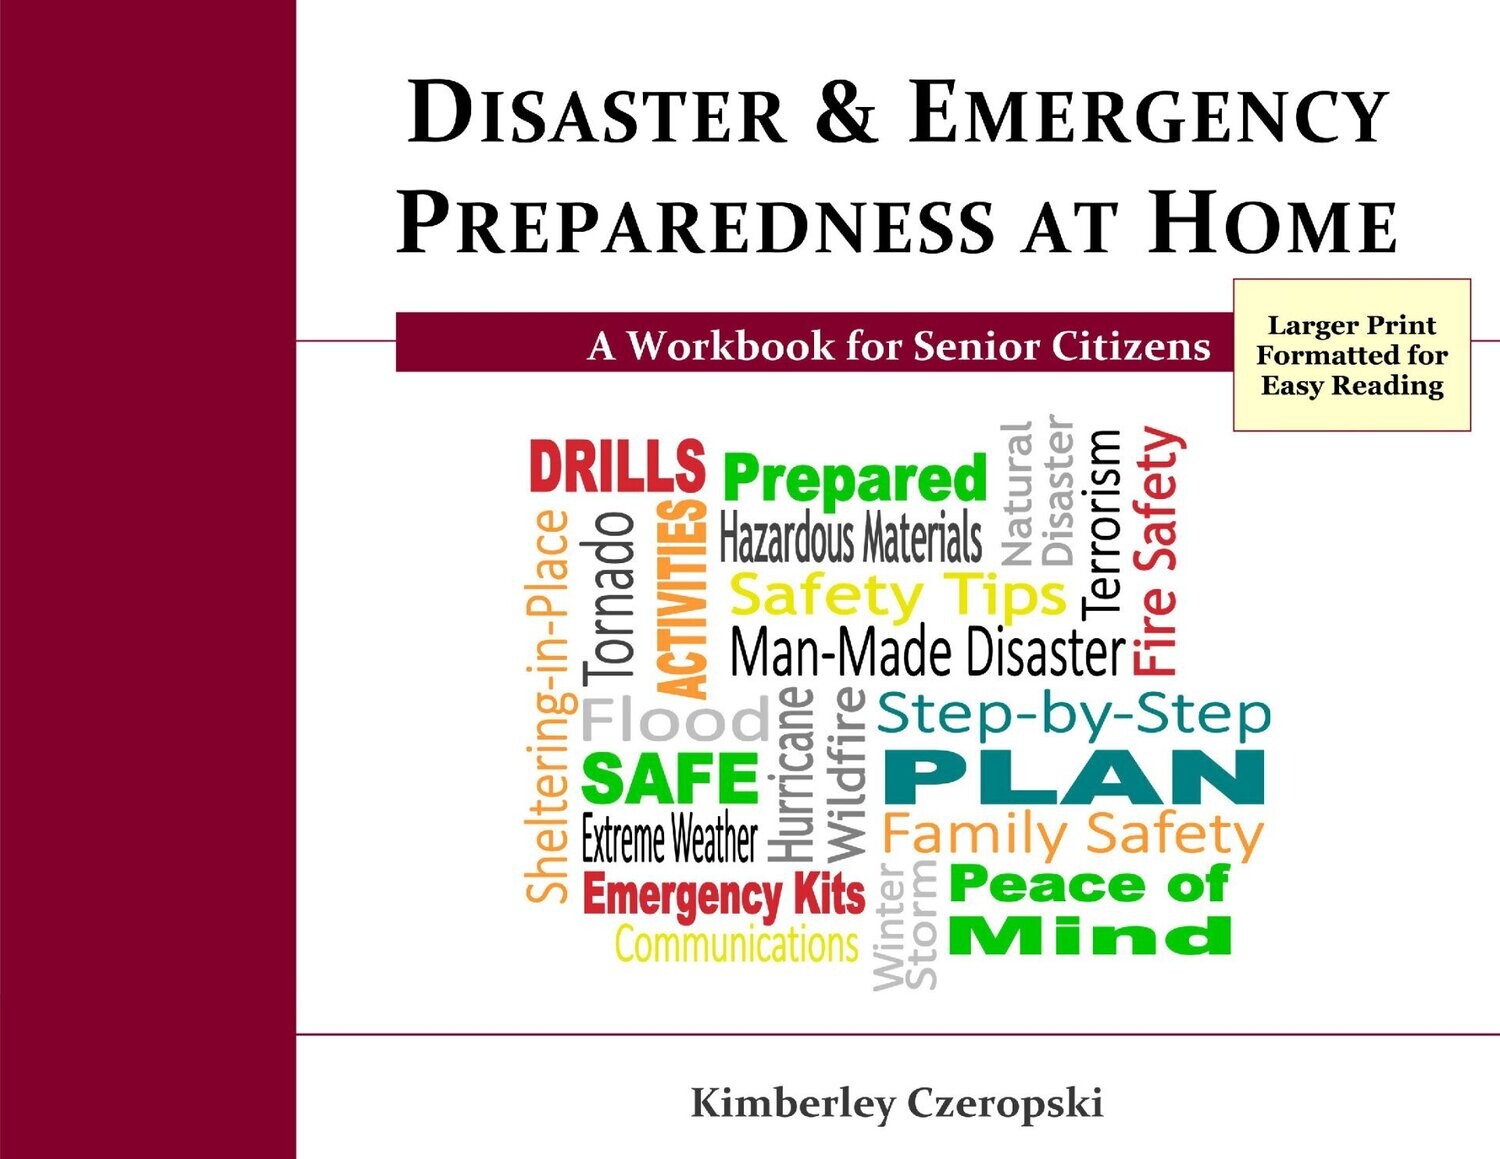 Disaster & Emergency Preparedness Workbook for Senior Citizens